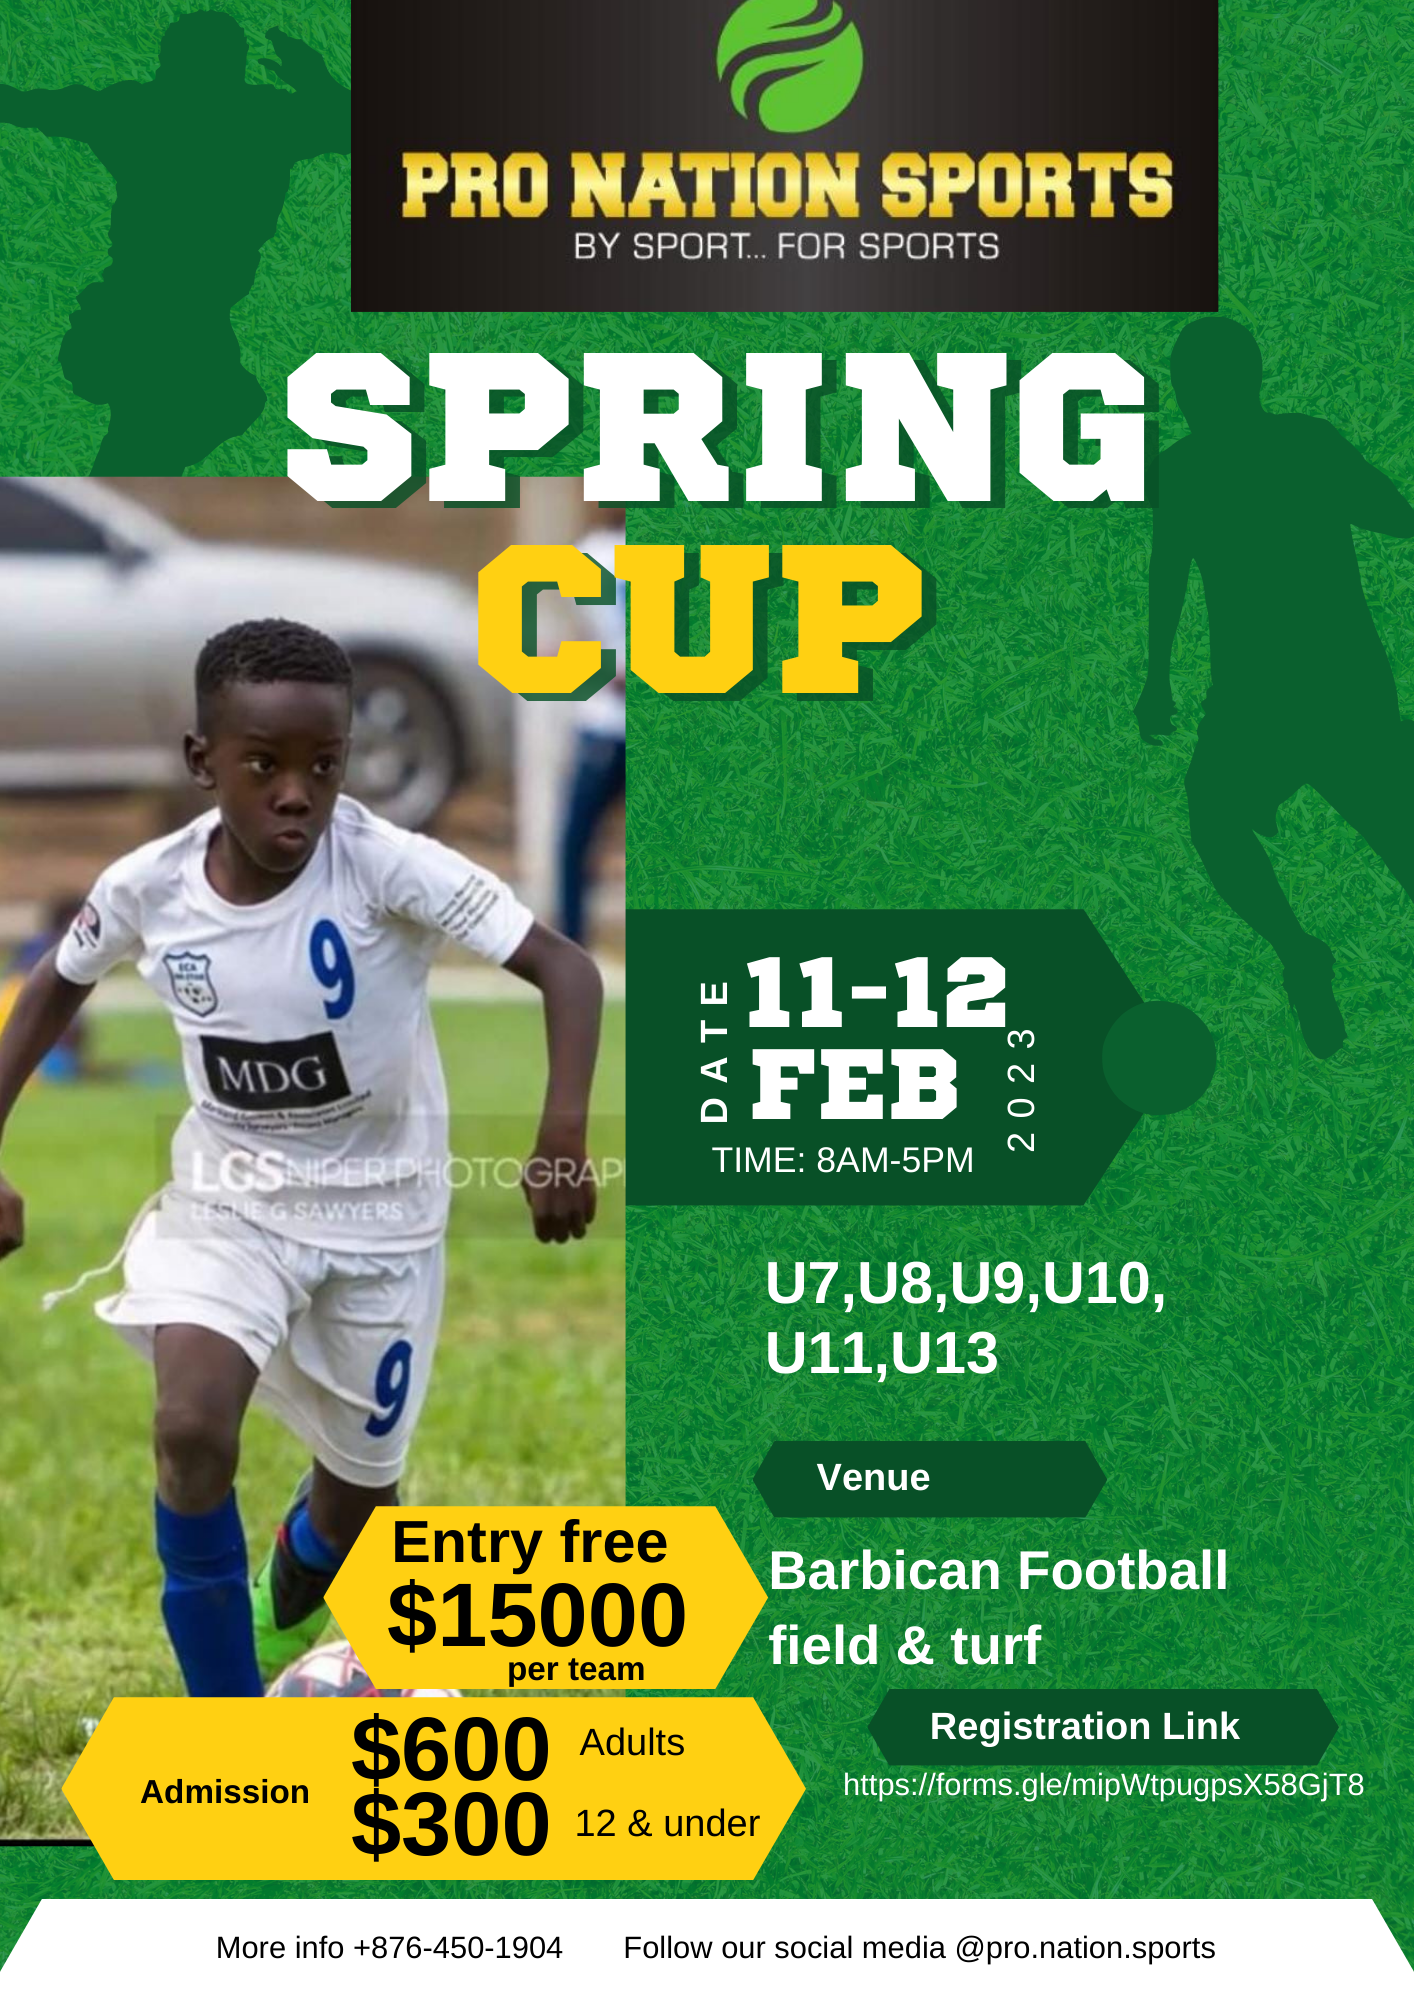 Springs cup U11